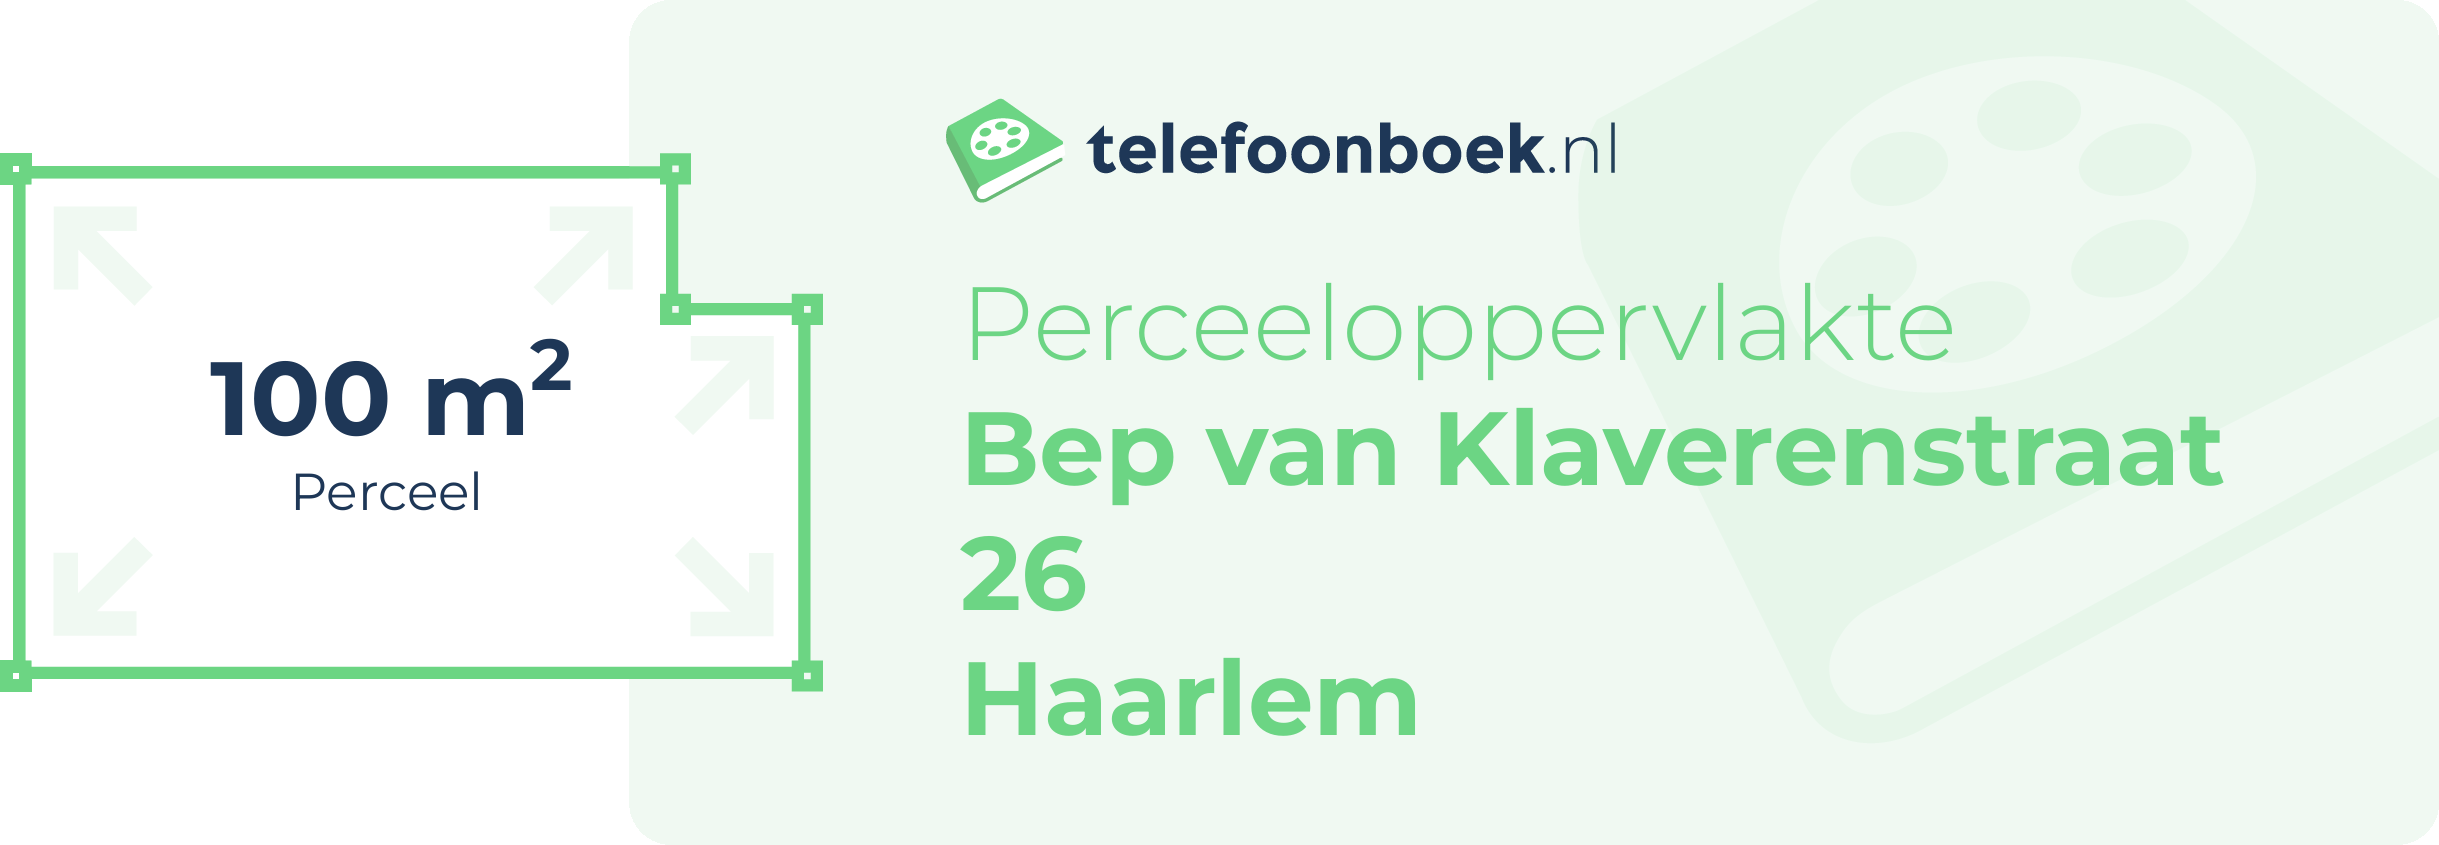 Perceeloppervlakte Bep Van Klaverenstraat 26 Haarlem